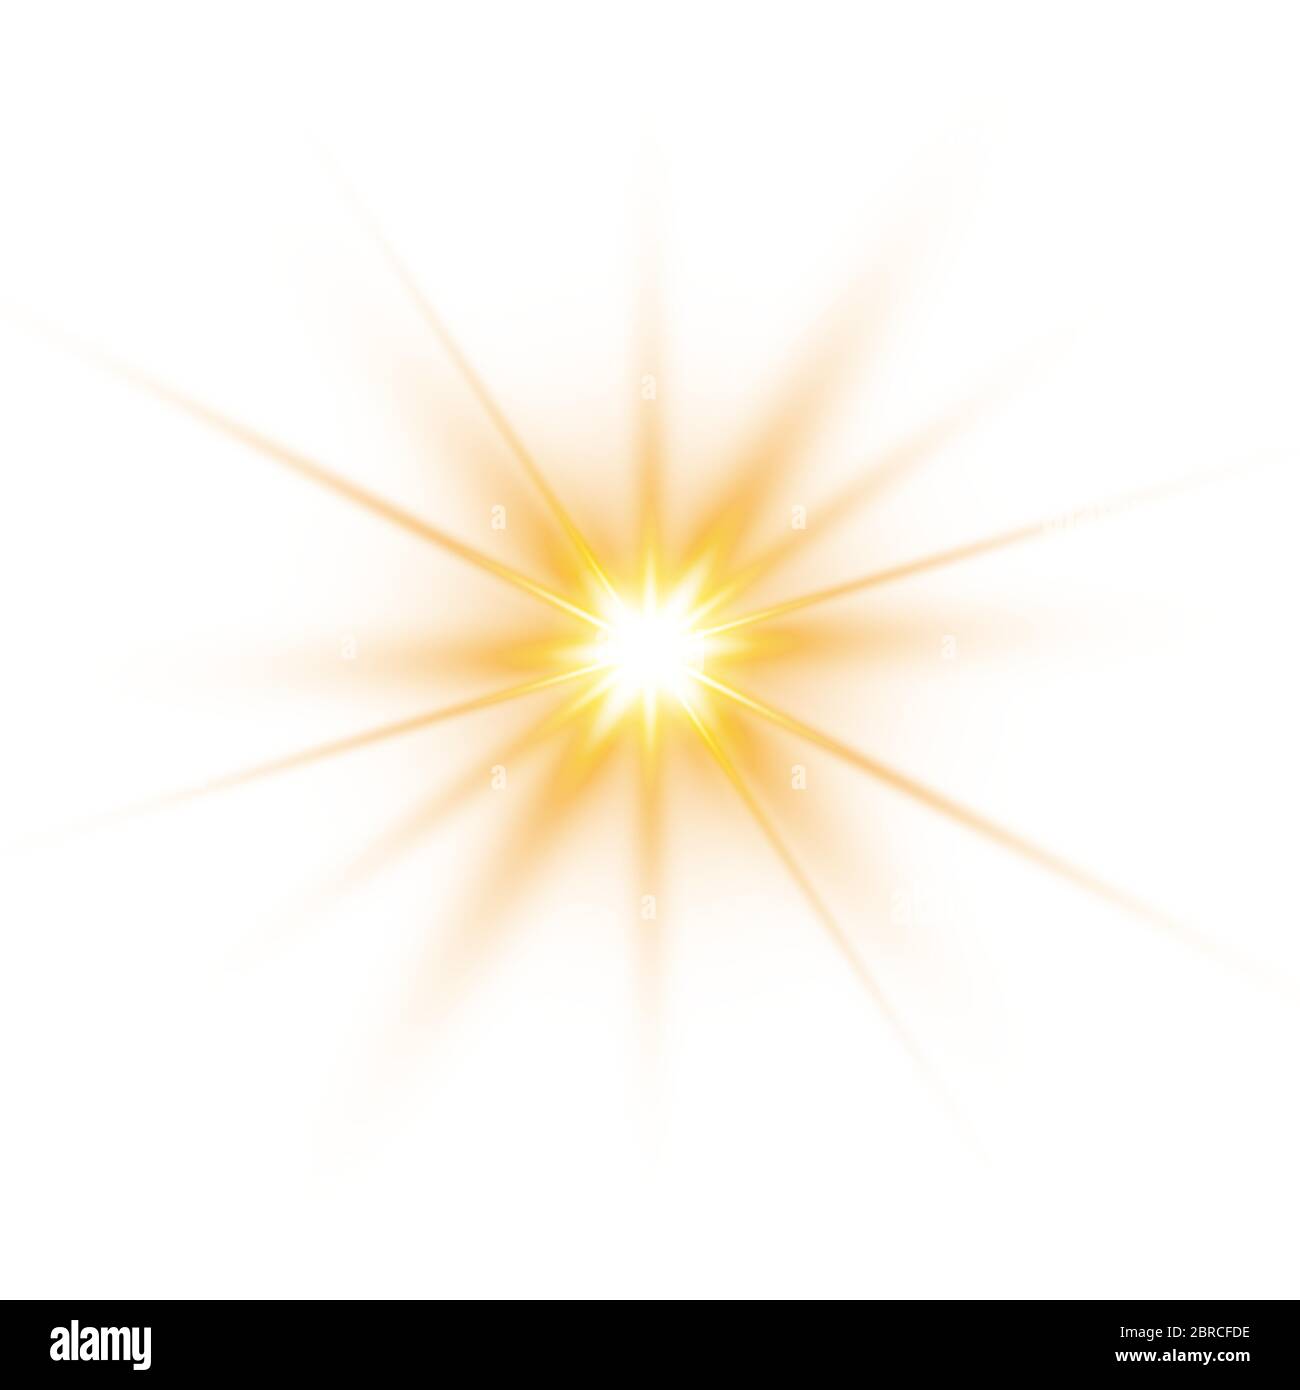 Lumière du soleil un design spécial translucide de l'effet de lumière. Illustration vectorielle. Illustration de Vecteur